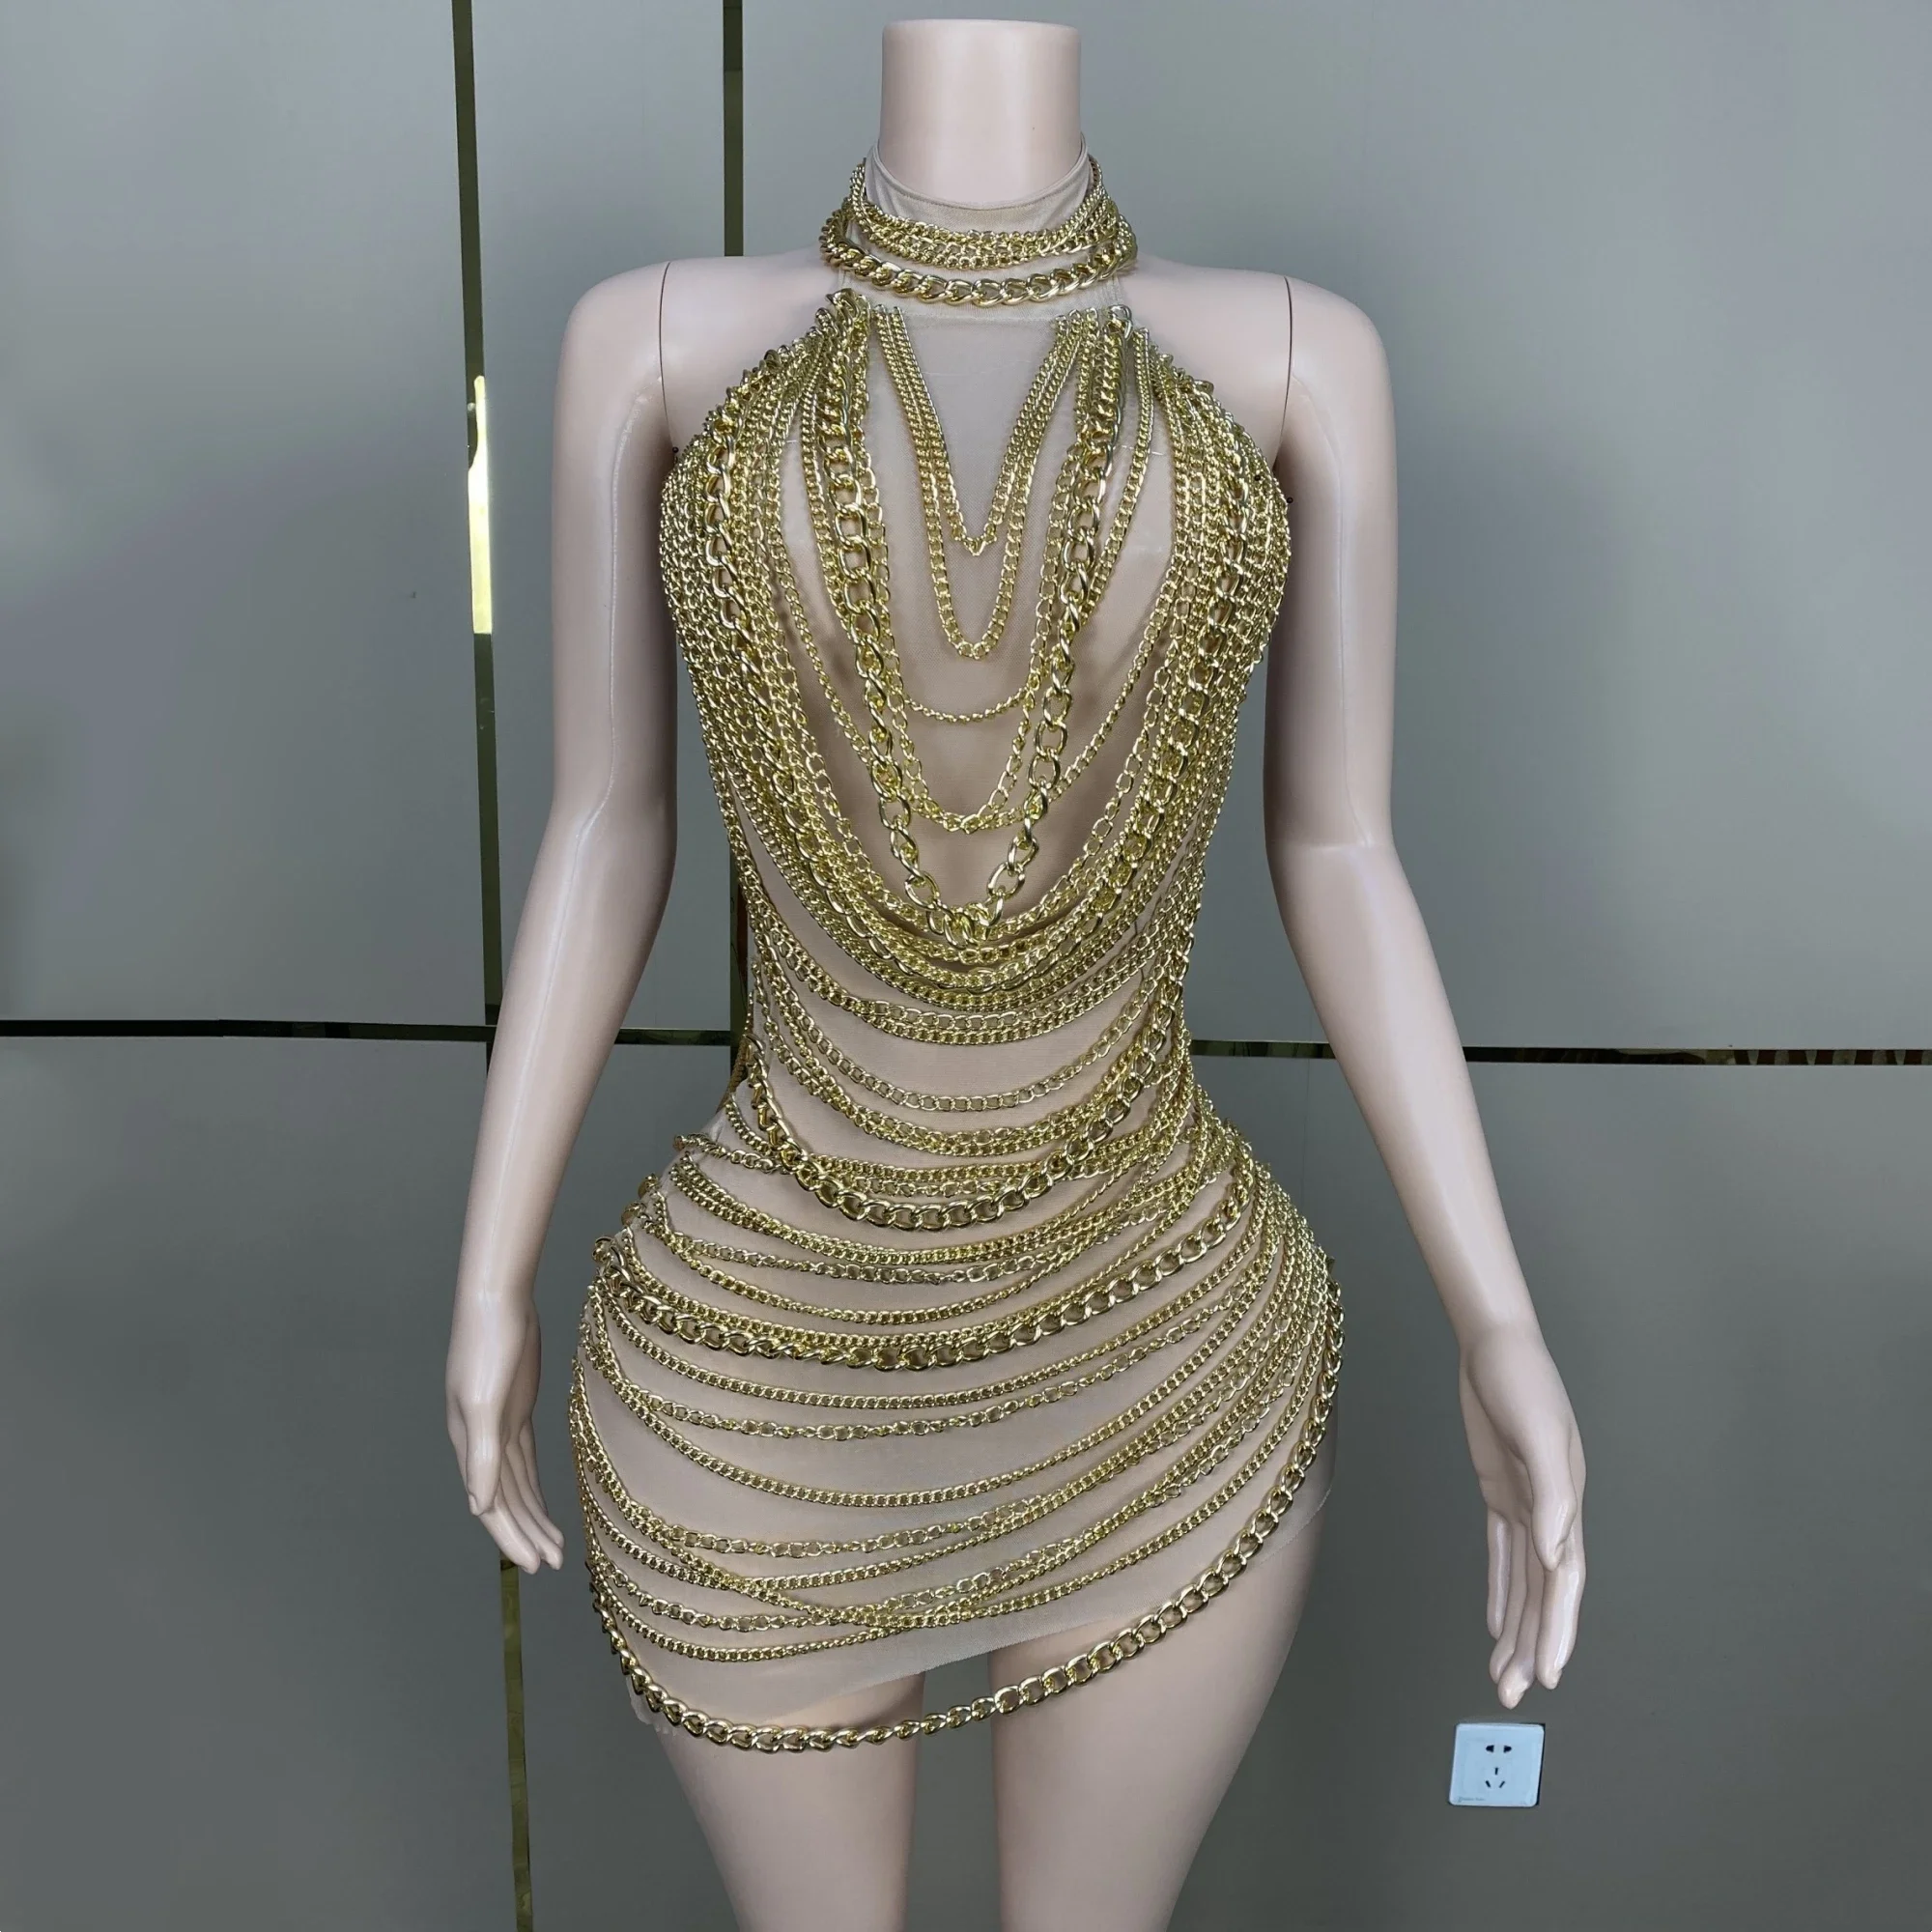 

Женское мини-платье с открытой спиной, золотистое Платье-футляр с цепочкой и кисточками, вечерний костюм для выступления в ночном клубе, для бара, певицы, сценическая одежда